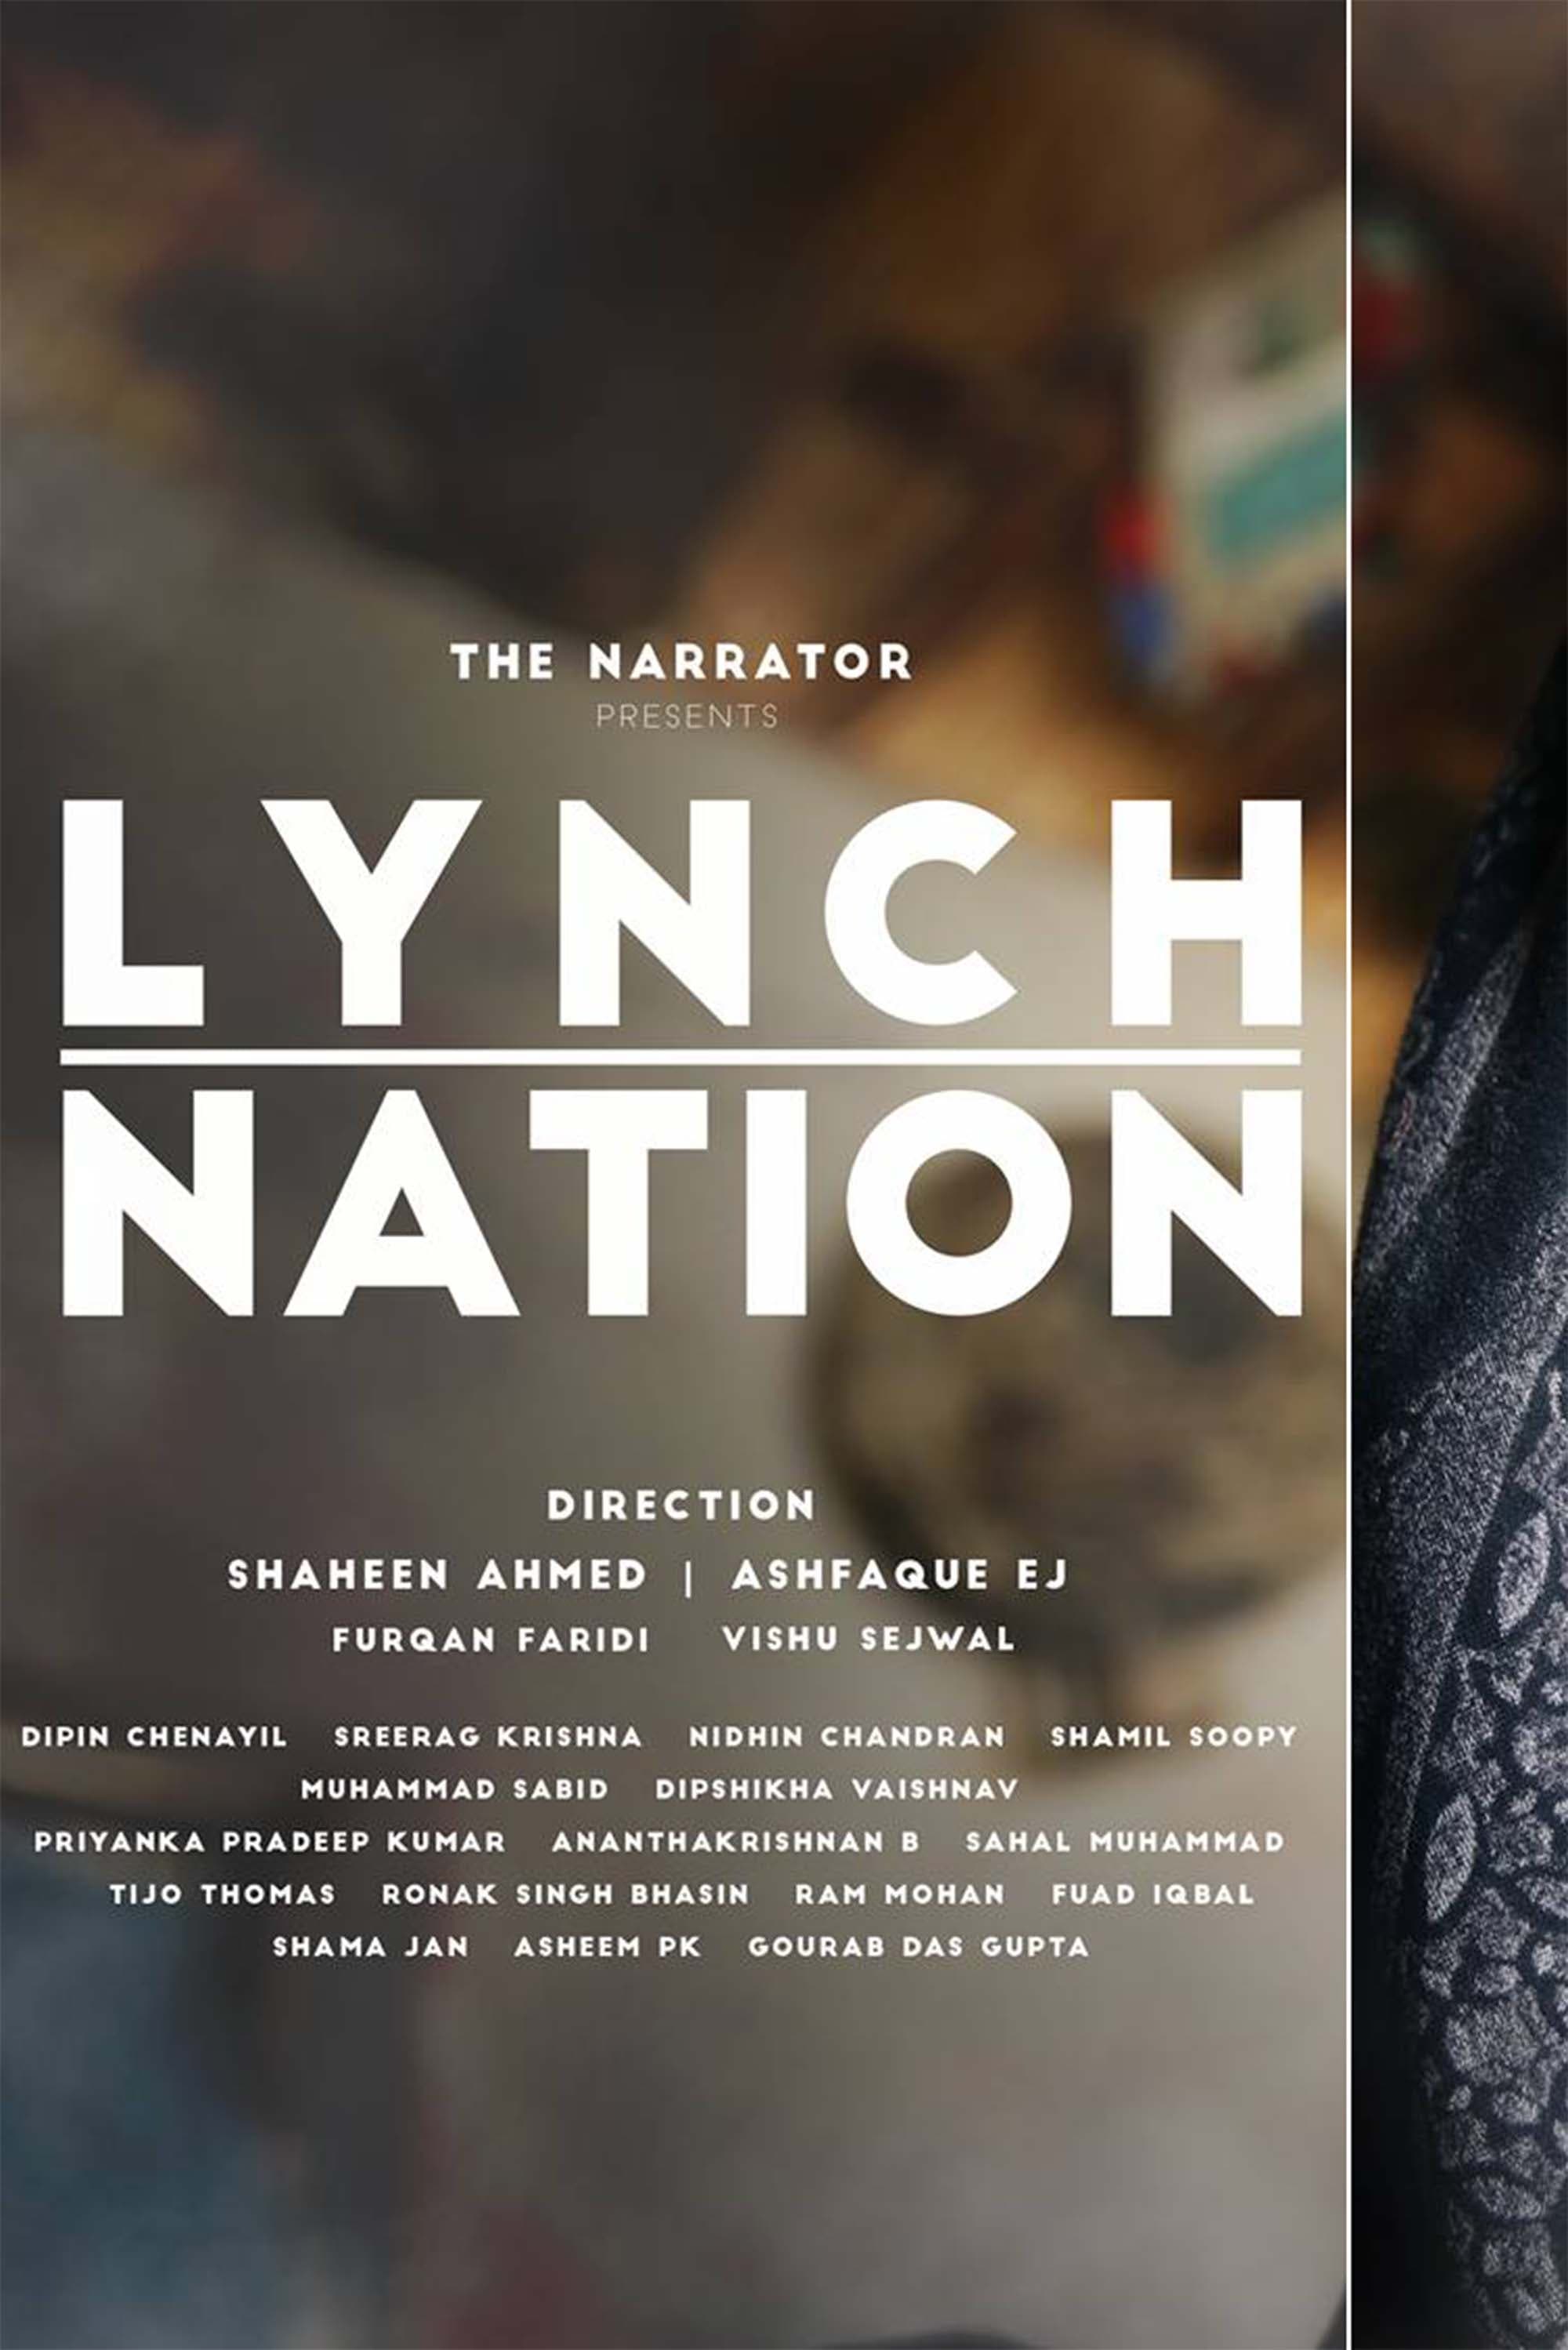 LYNCH NATION